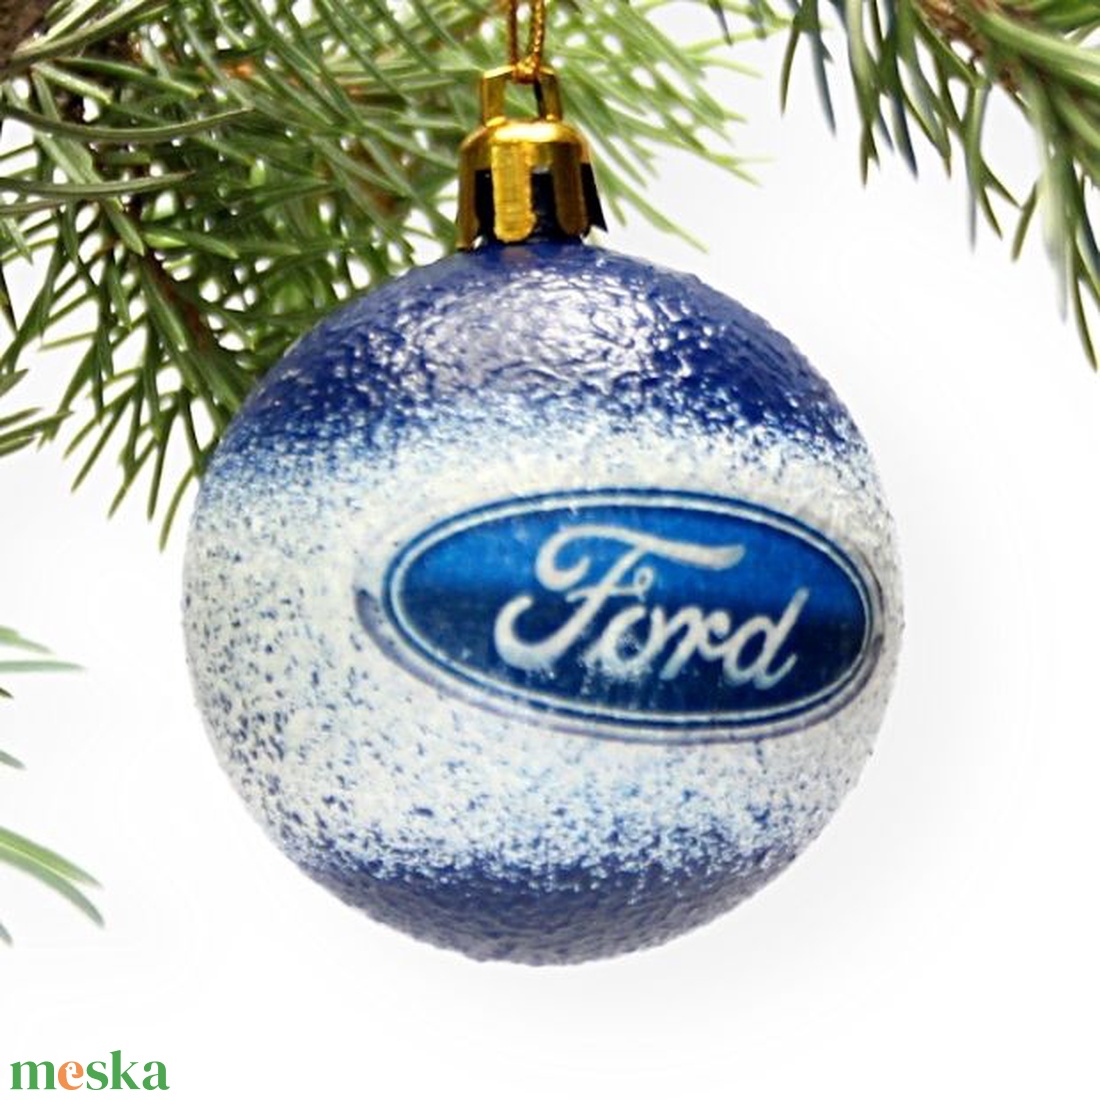 Karácsonyfa gömb autó témájú emblémával - FORD márka rajongóinak -  párodnak; szerelmednek  mikulásra és karácsonyra  - karácsony - karácsonyi lakásdekoráció - karácsonyfadíszek - Meska.hu